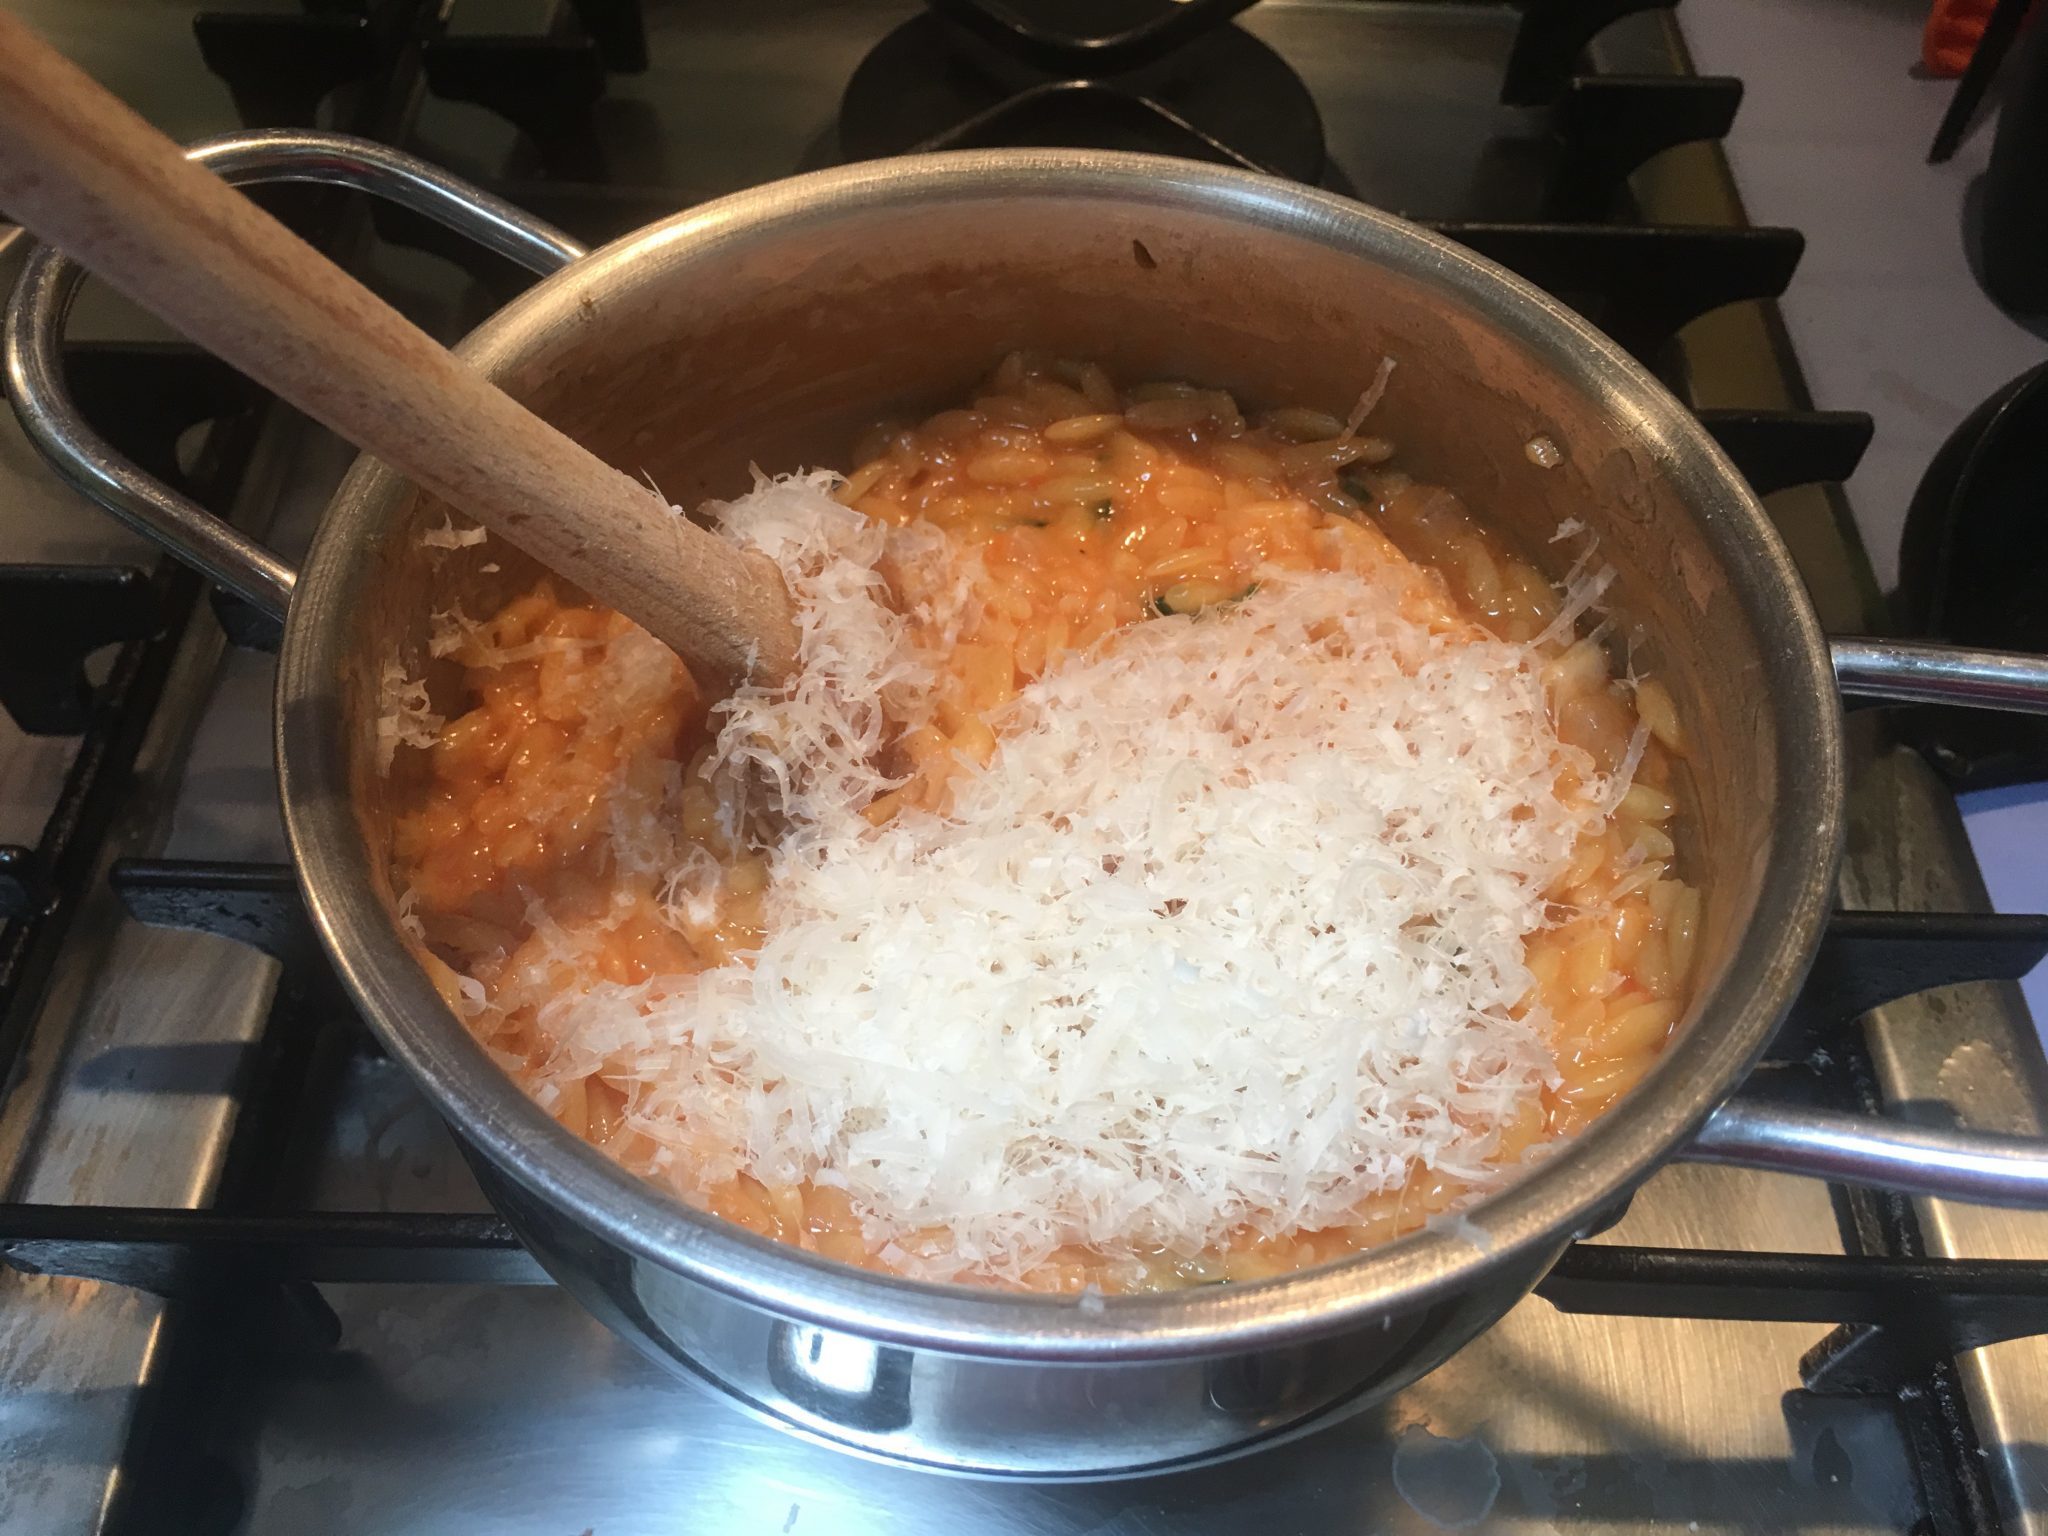 Risoni risottati - conditi col parmigiano